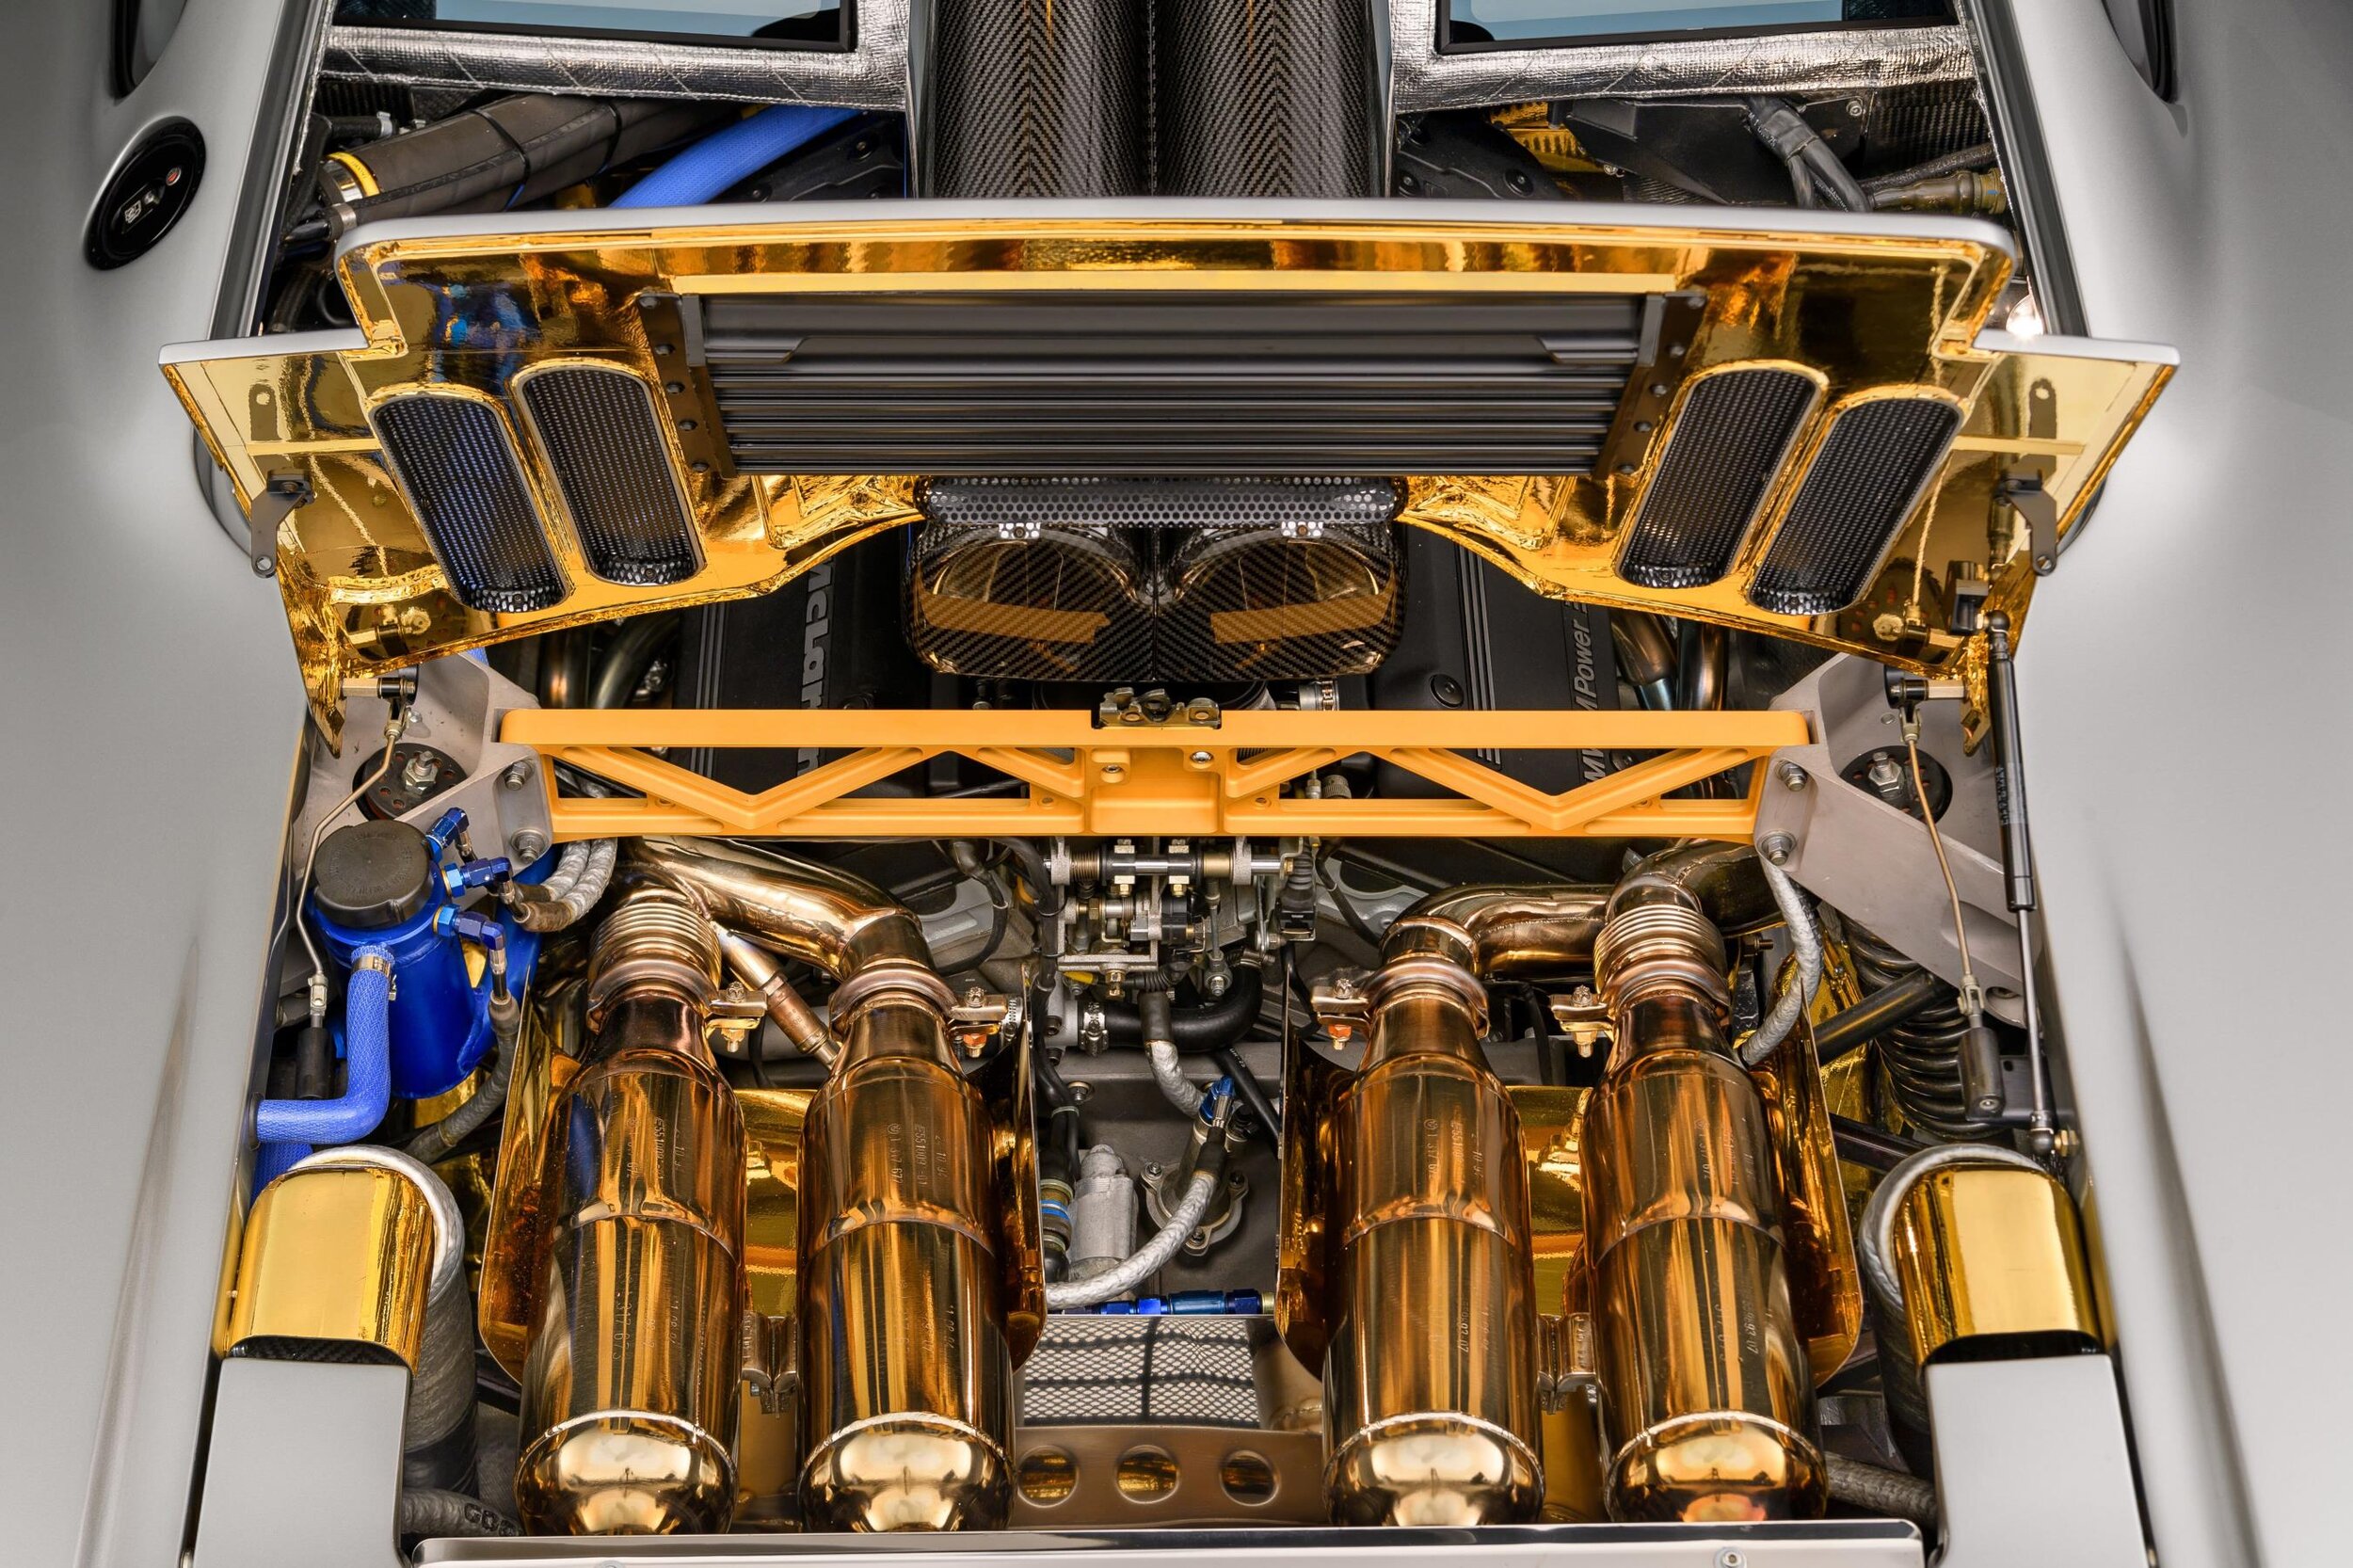 McLaren F1 engine bay showing gold insulation.jpg